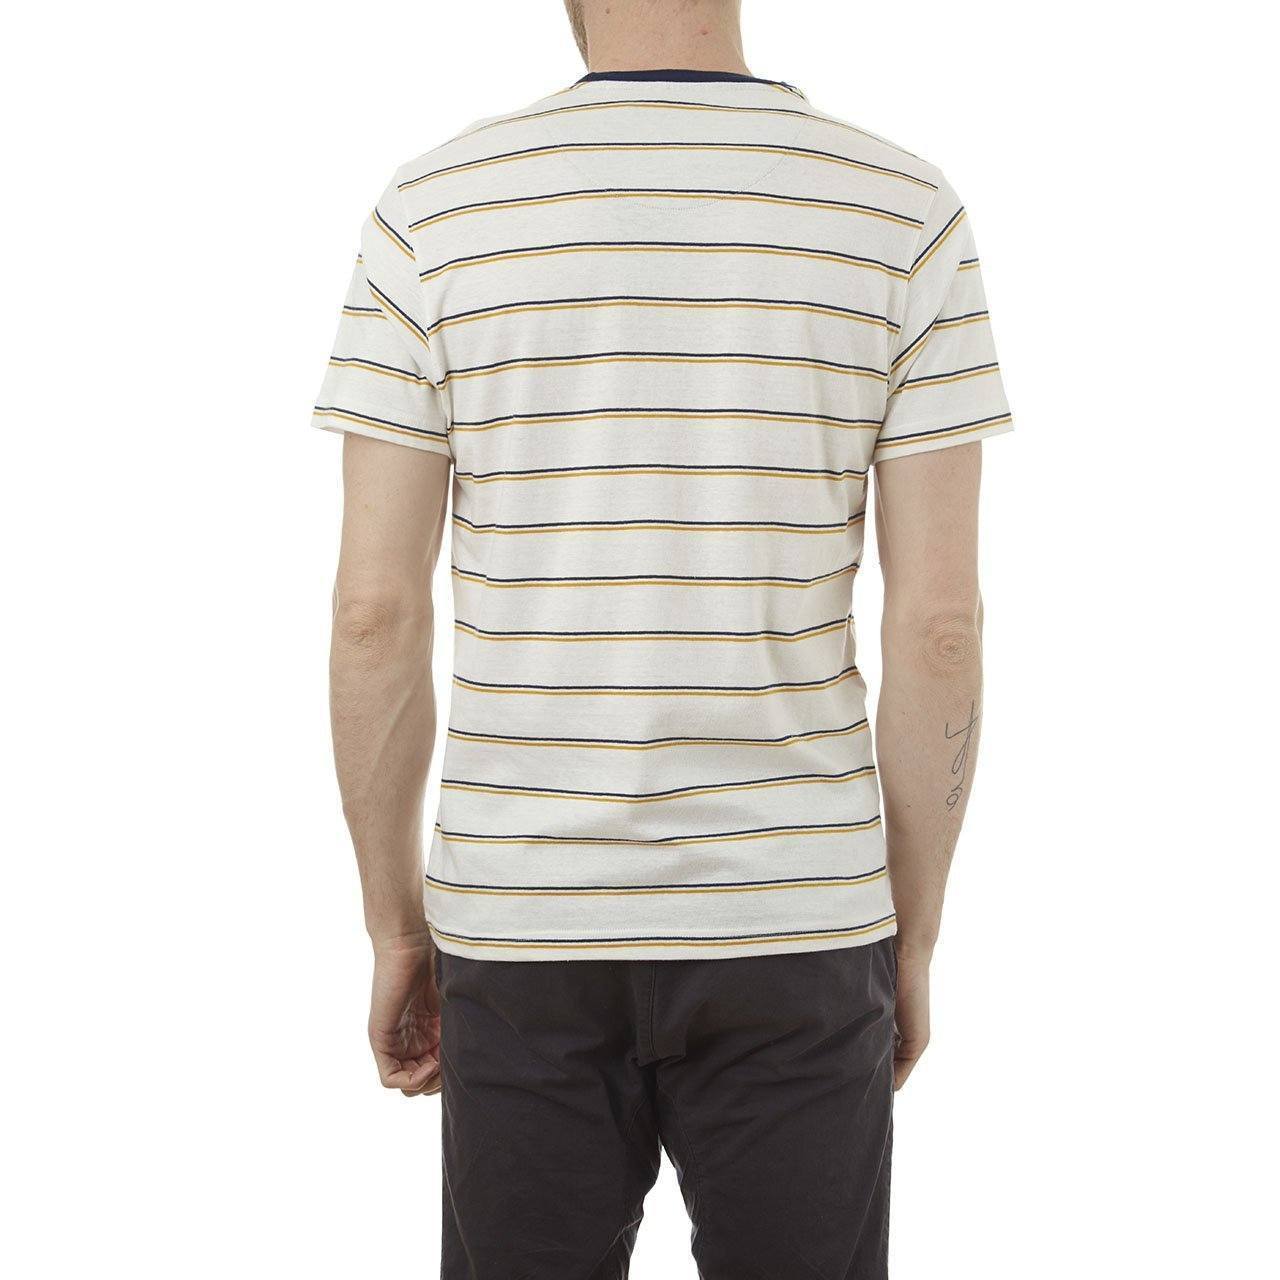 Men's Edgar Striped Tee by PX Clothing - Men - Apparel - Shirts - T-Shirts - Benn~Burry